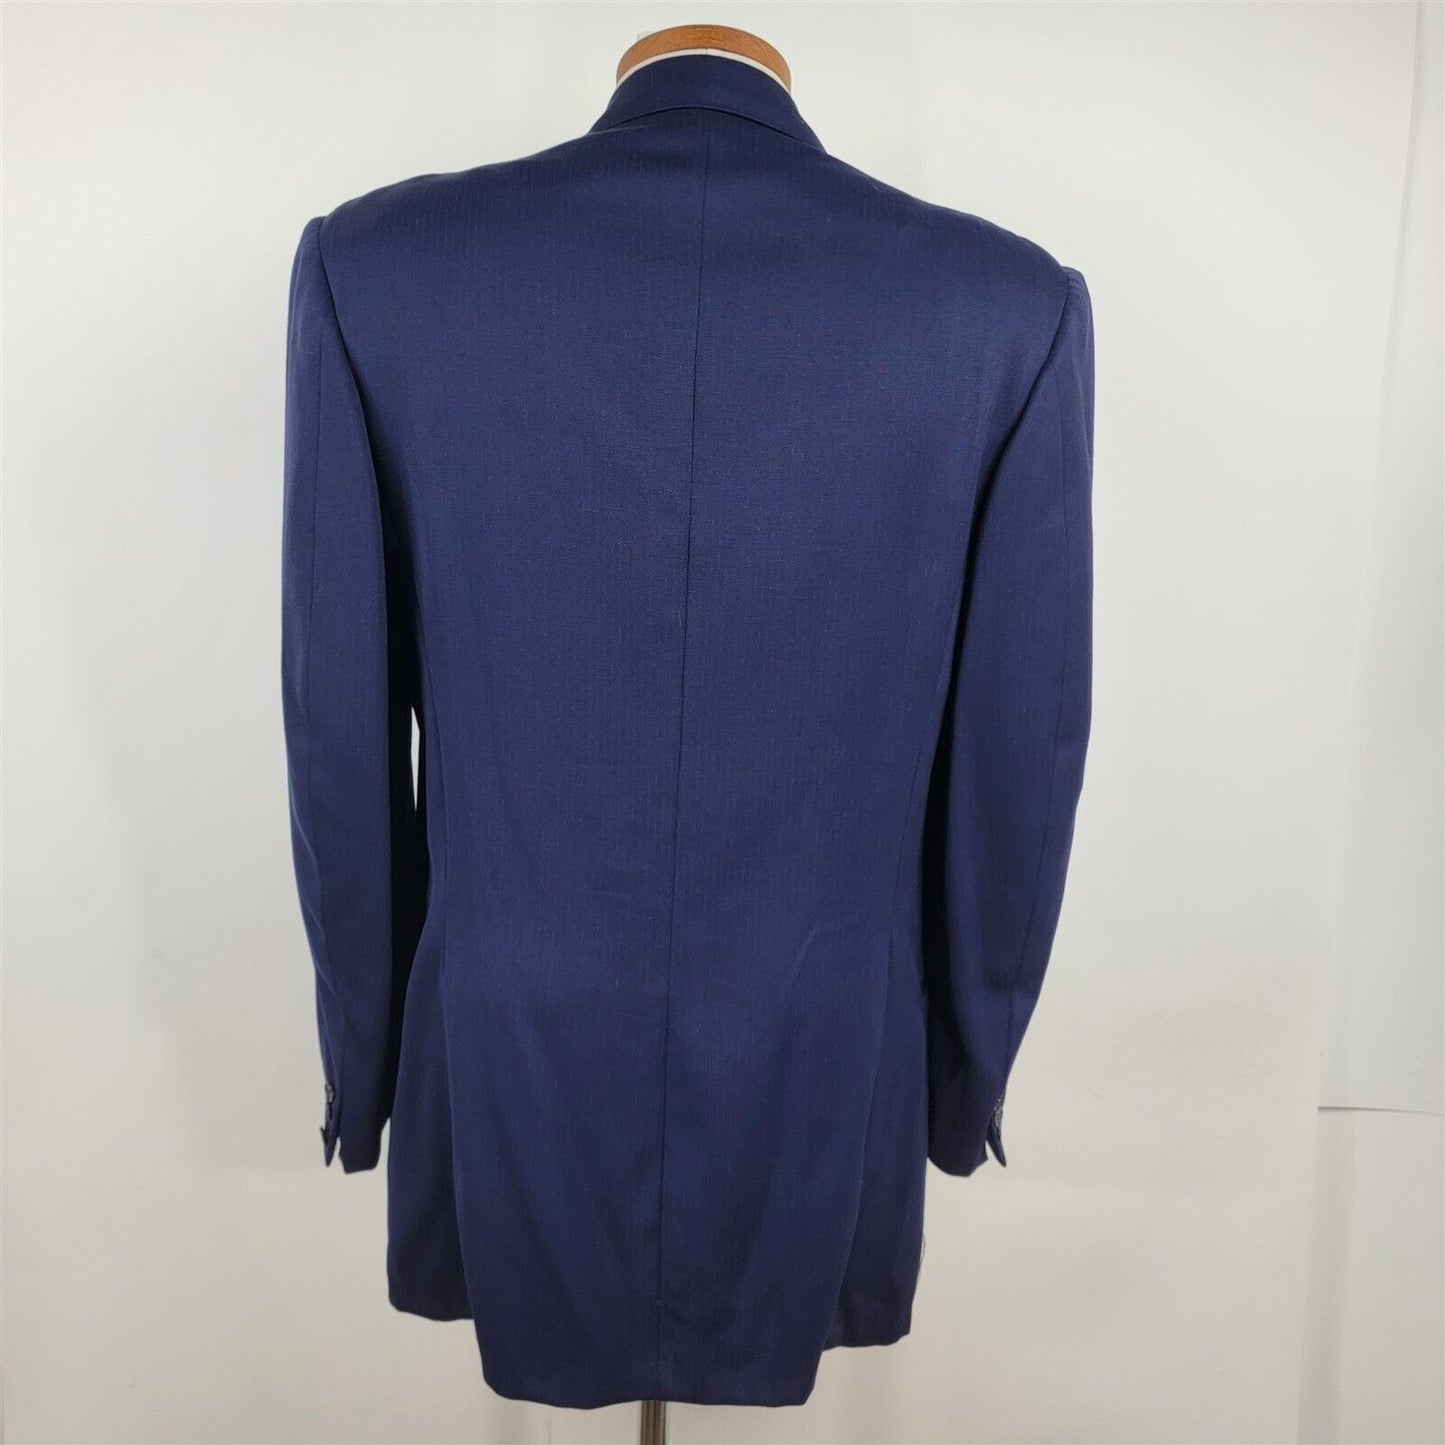 Vintage Trojan Jim Clinton Blue Two Button Blazer Sports Coat Jacket Mens